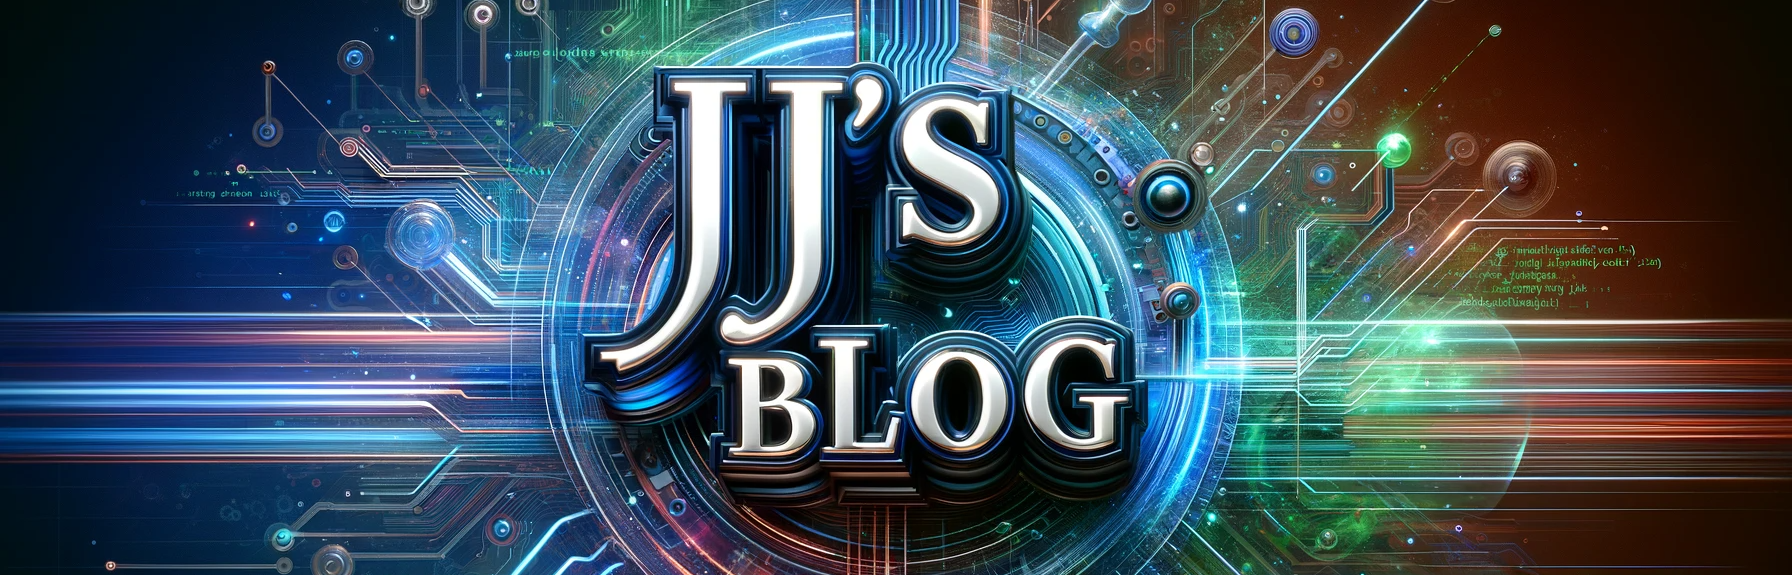 JJ's Blog